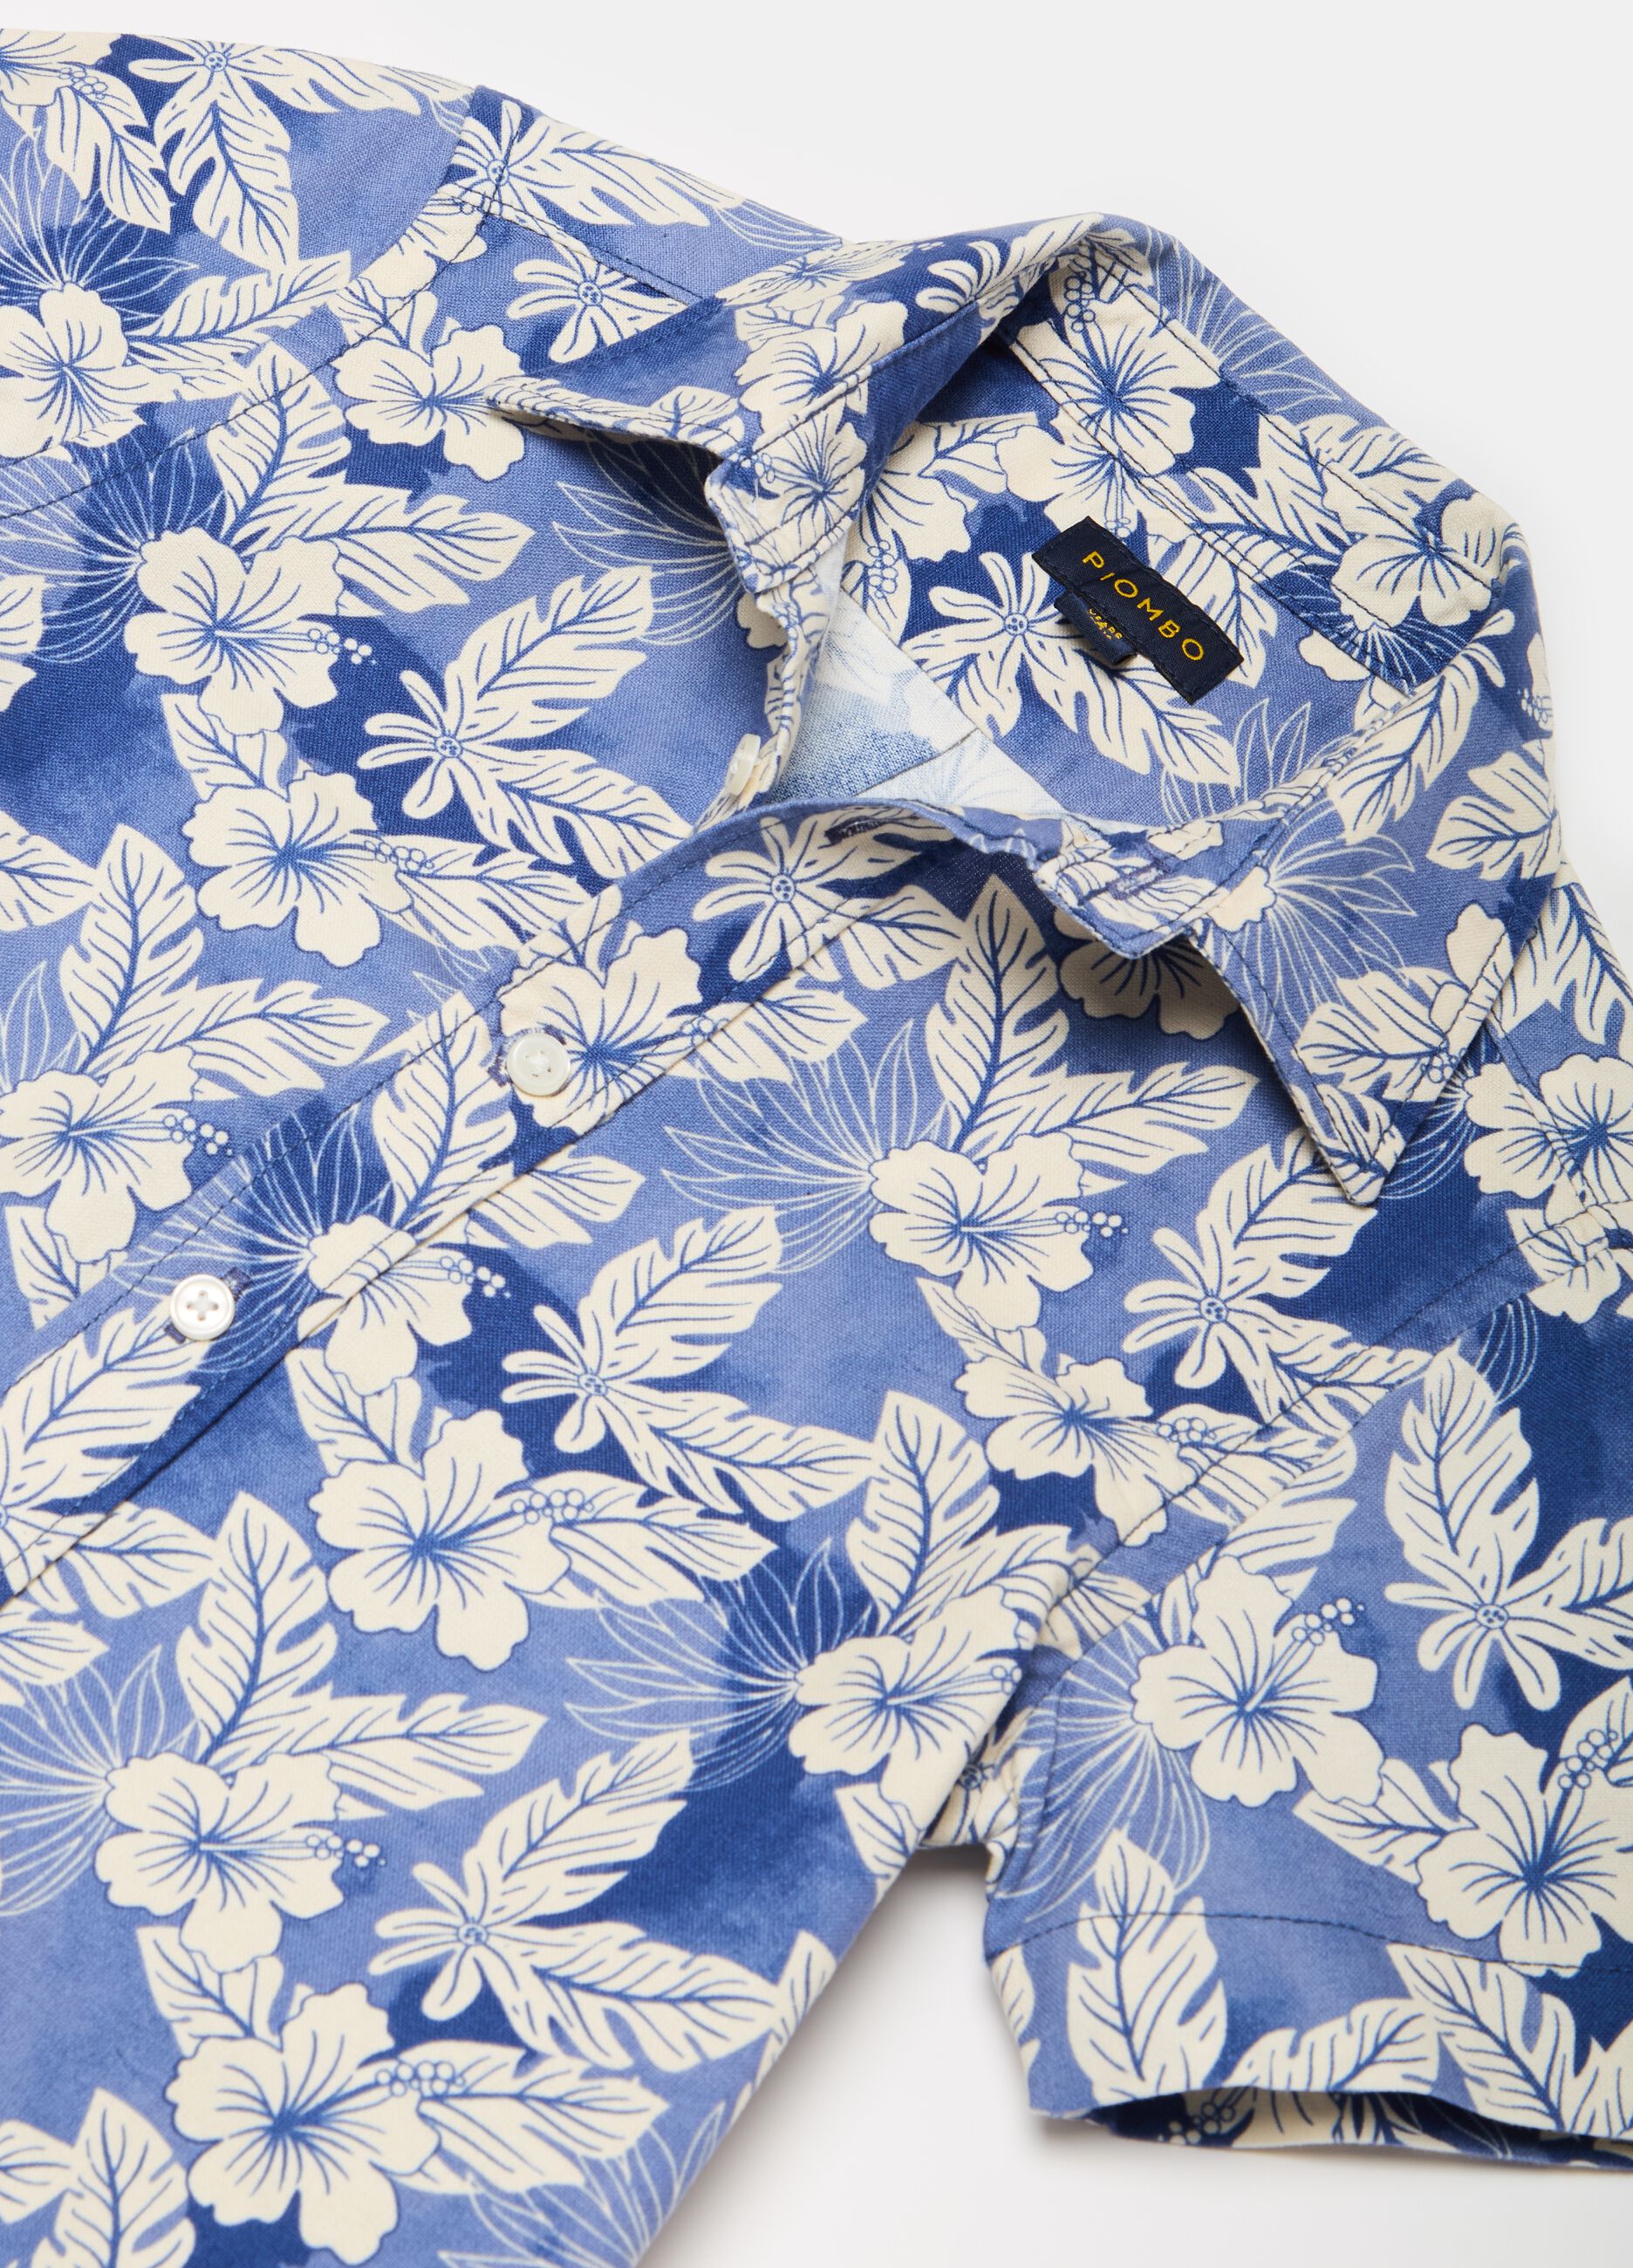 Camisa de manga corta con estampado hawaiano